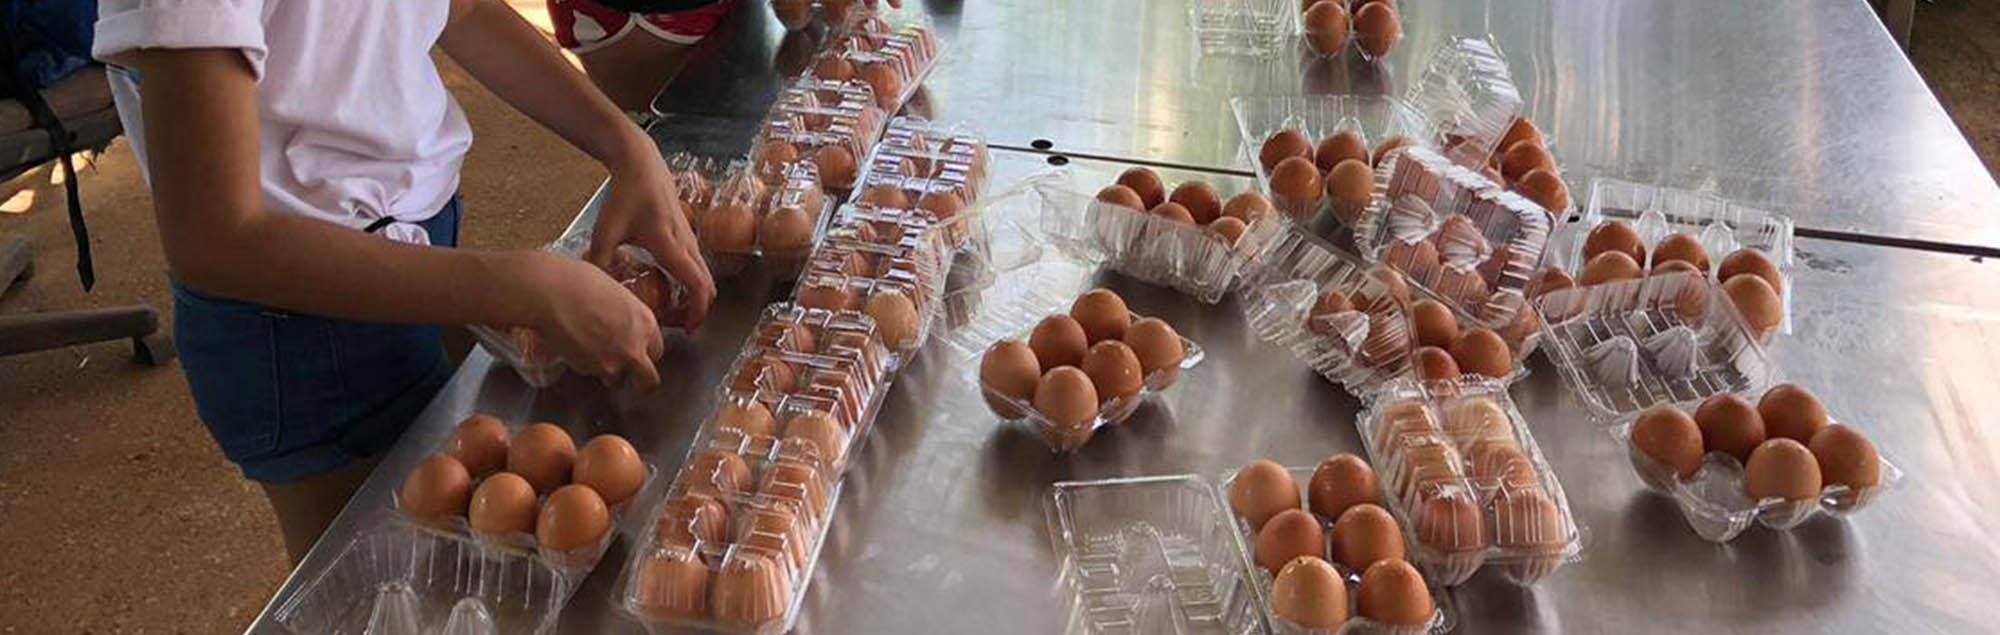 Triton farm eggs get packaged